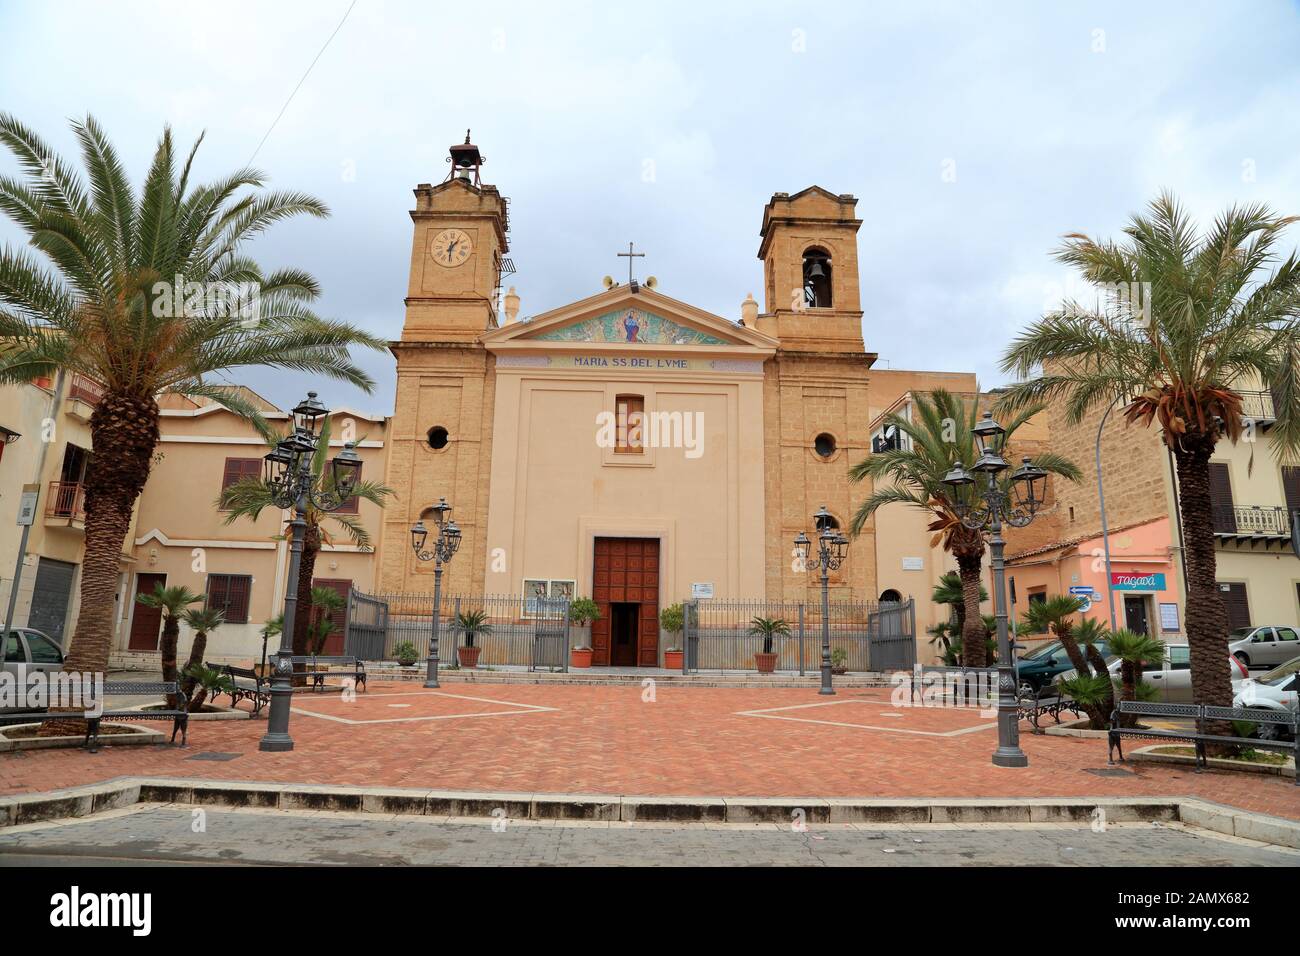 Chiesa Parrocchiale di Maria SS. del Lume, Santa Flavia Stock Photo